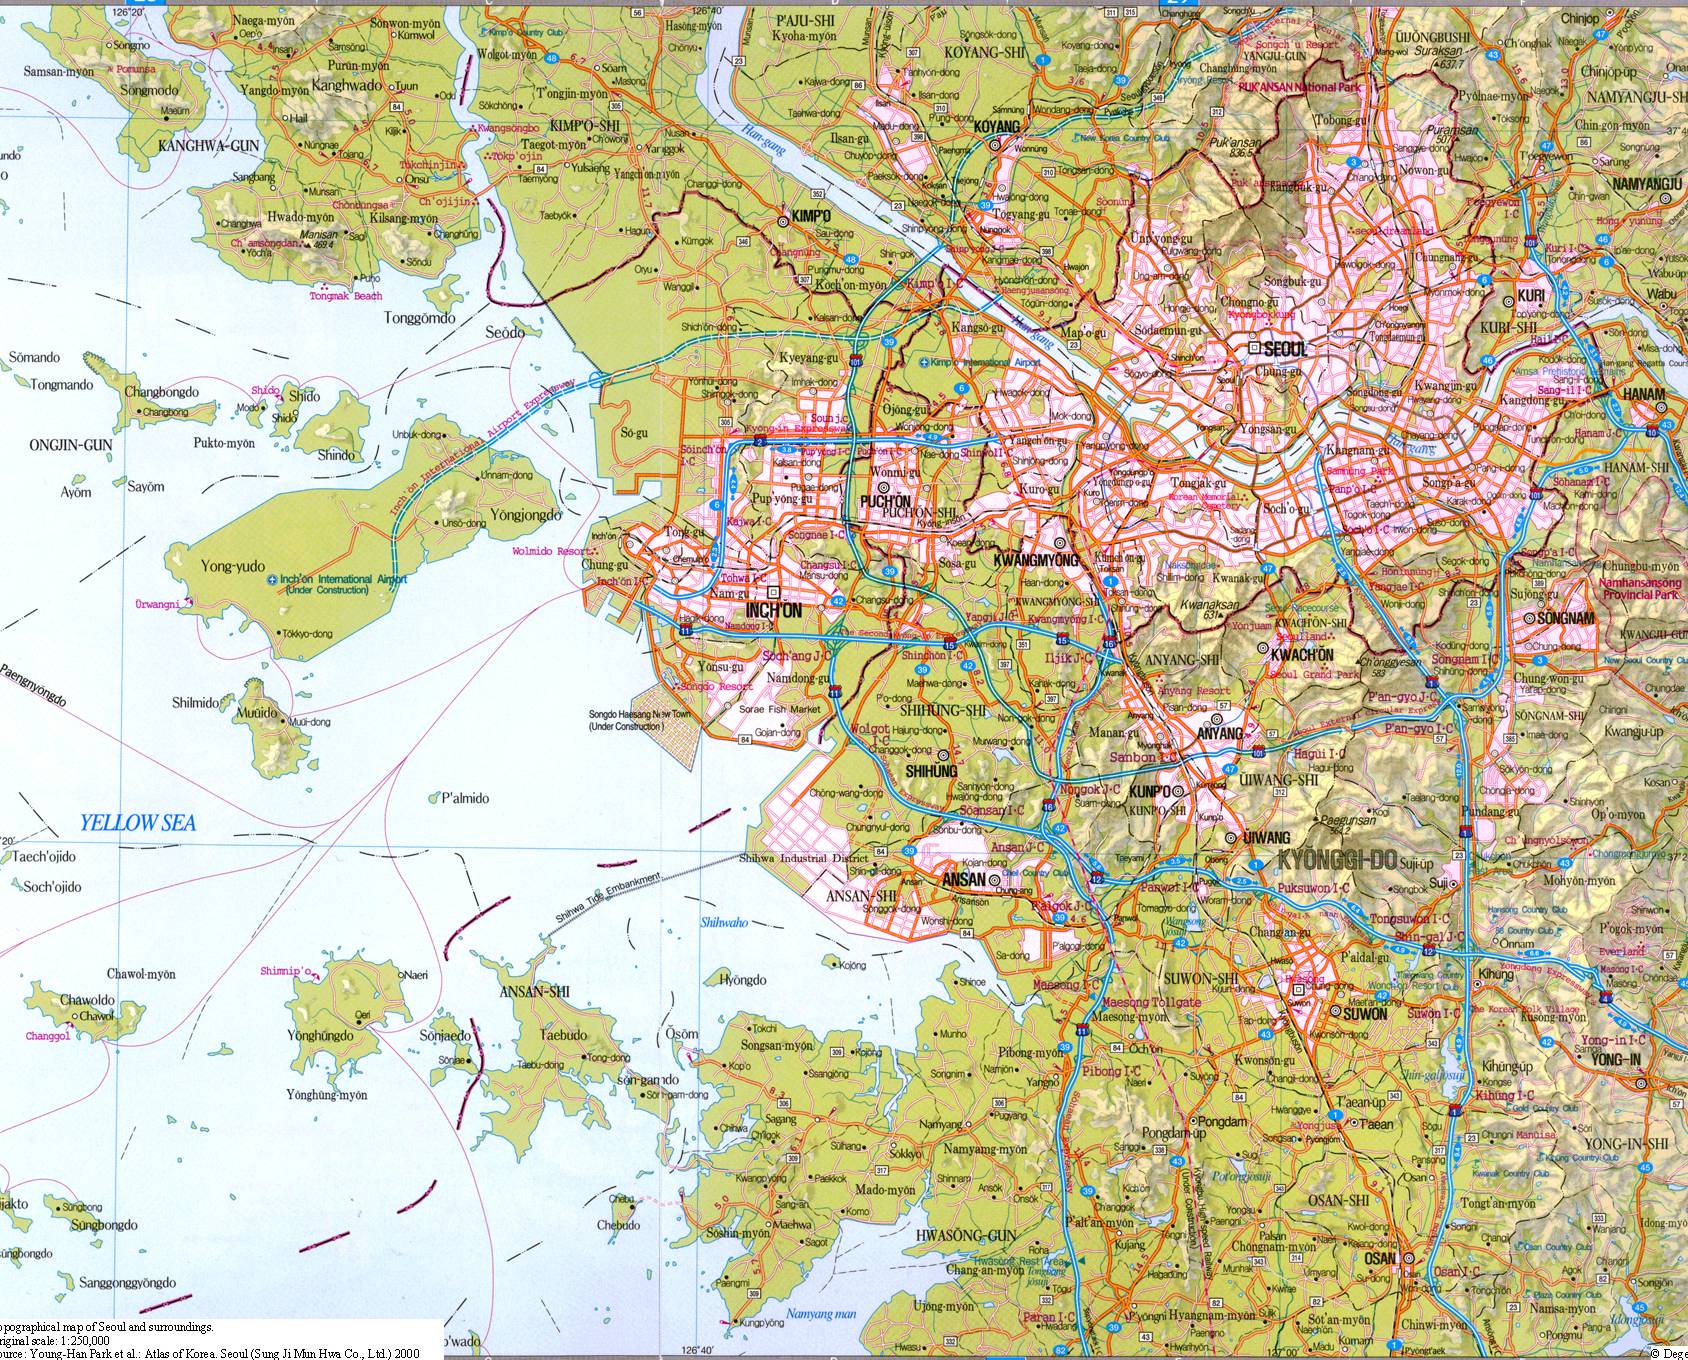 首尔地区地图,韩国地图高清中文版